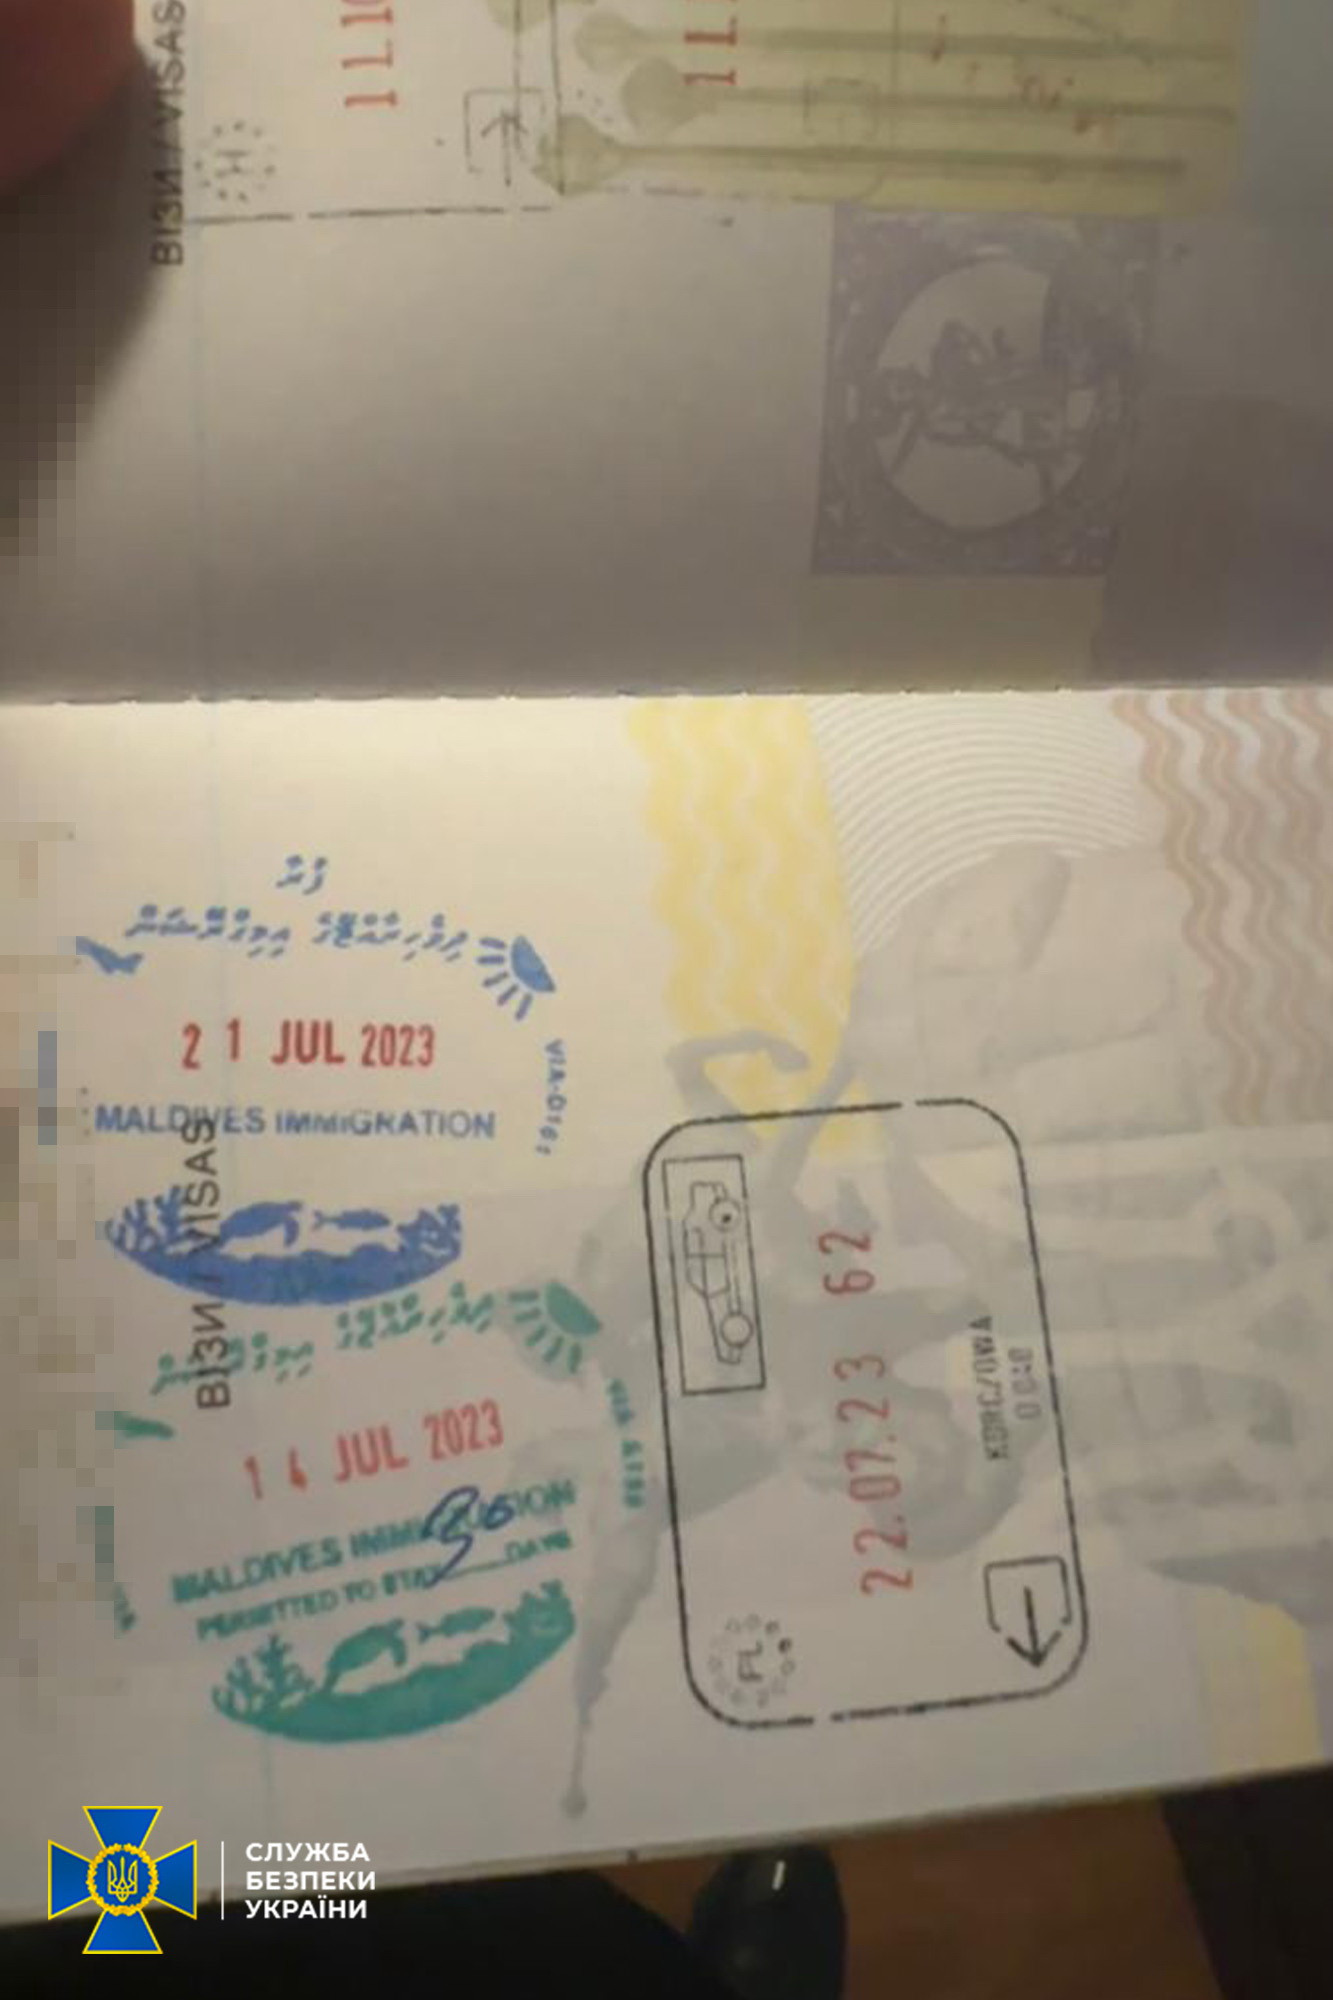 К Аристову пришли с обысками: поездка на Мальдивы подтвердилась — фото